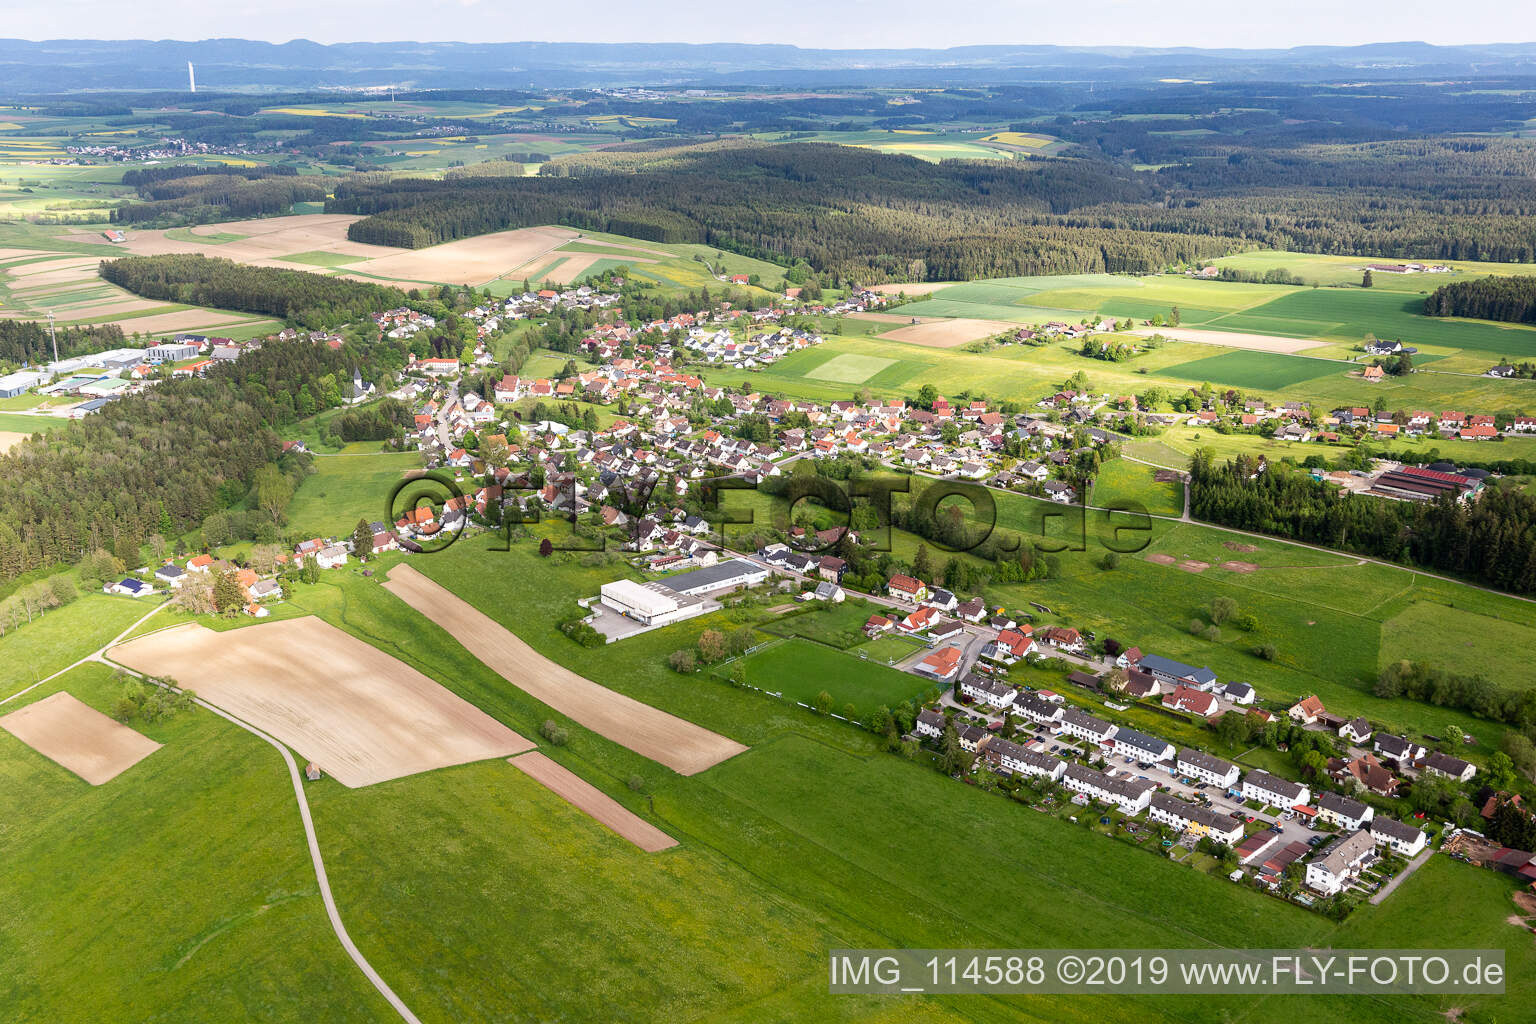 Schramberg im Bundesland Baden-Württemberg, Deutschland aus der Luft betrachtet